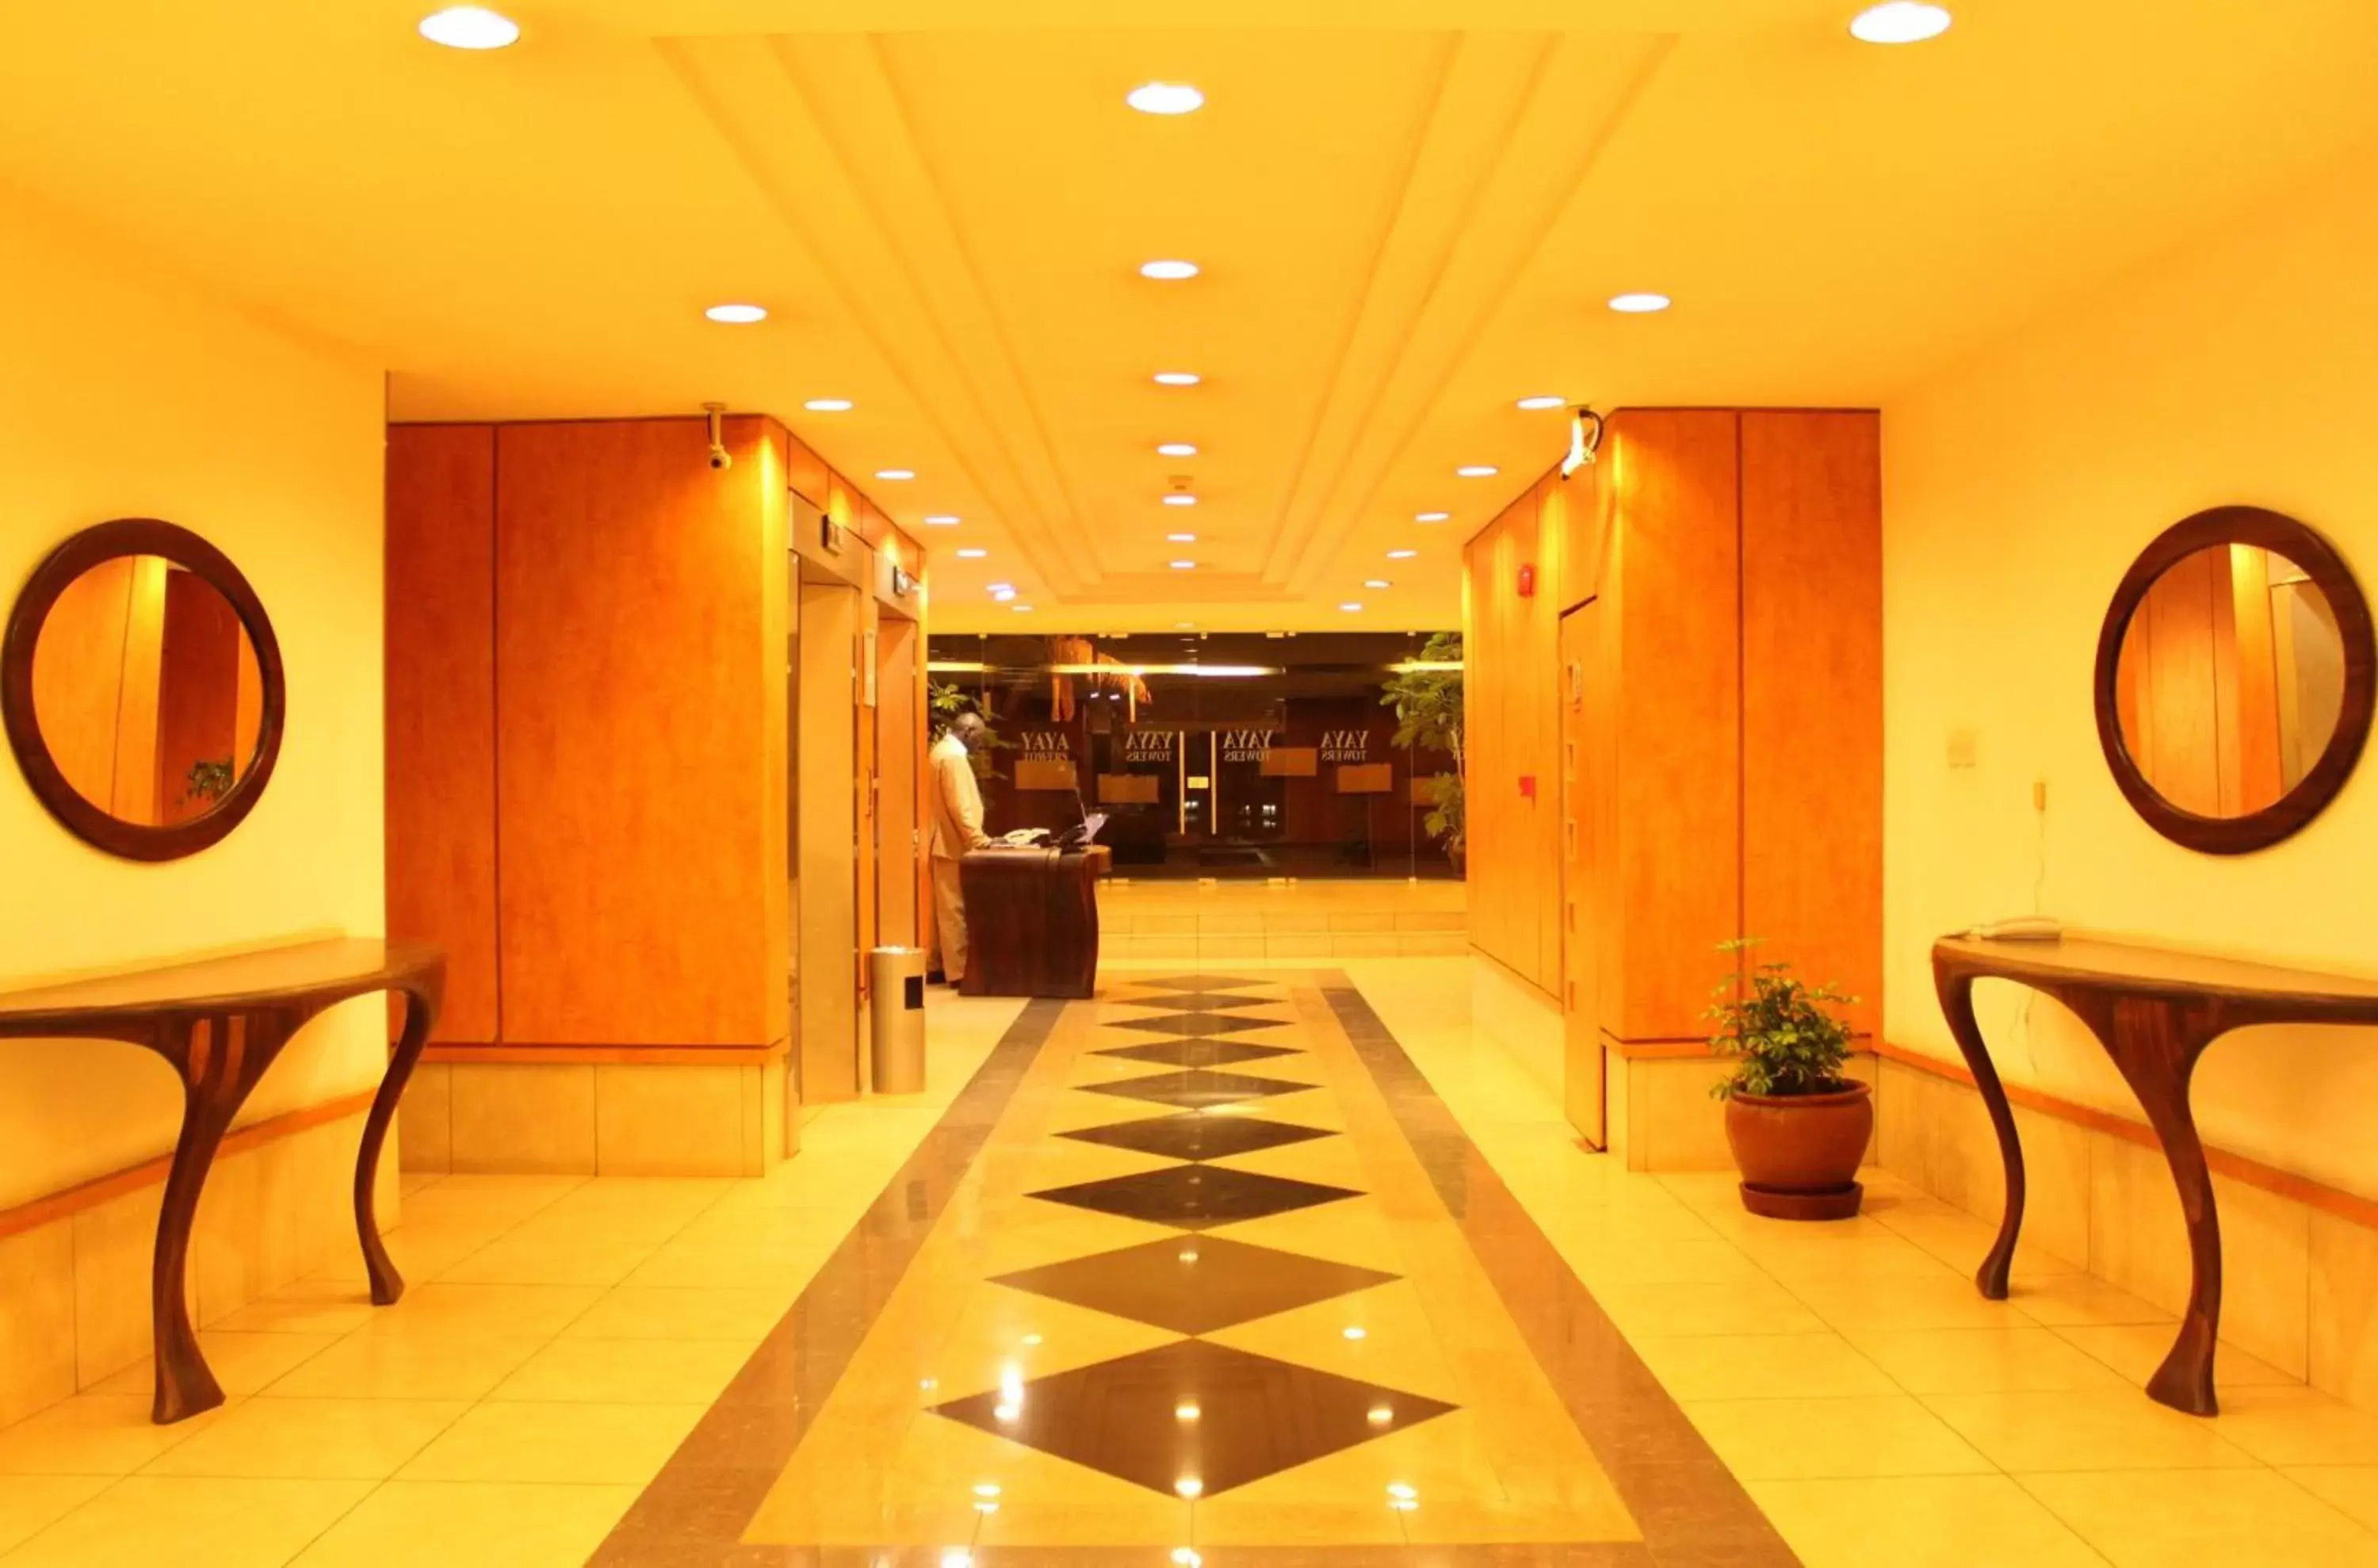 Lobby or reception in Yaya Hotel & Apartments